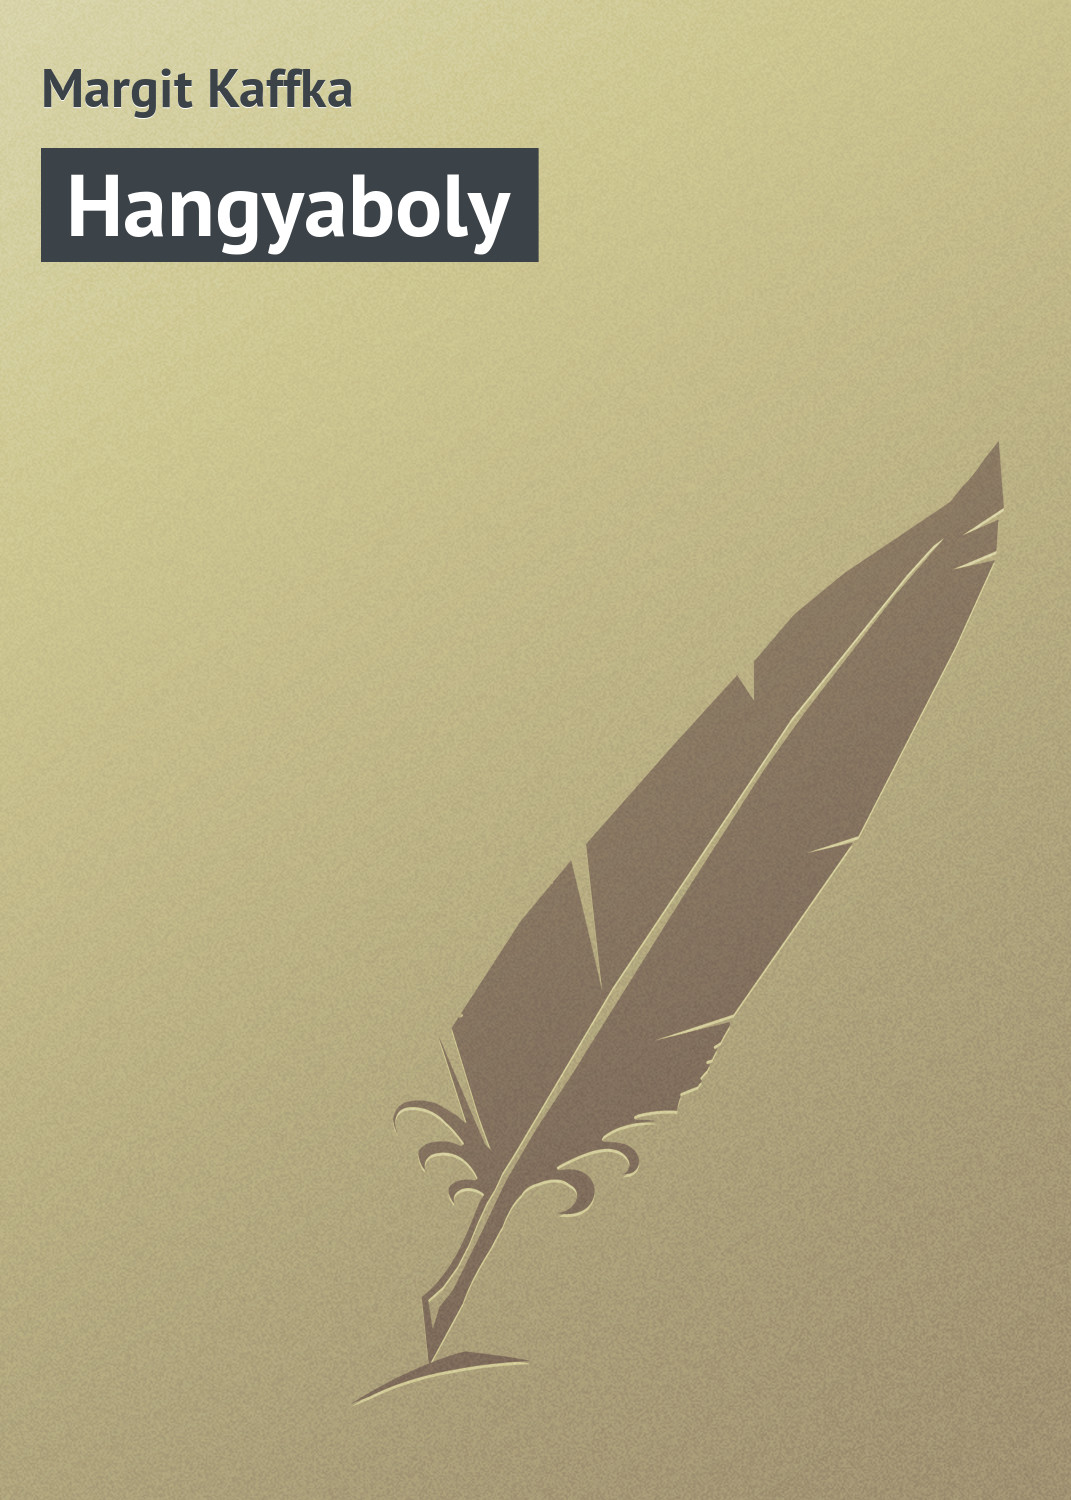 Книга Hangyaboly из серии , созданная Margit Kaffka, может относится к жанру Зарубежная старинная литература, Зарубежная классика. Стоимость электронной книги Hangyaboly с идентификатором 21102814 составляет 5.99 руб.